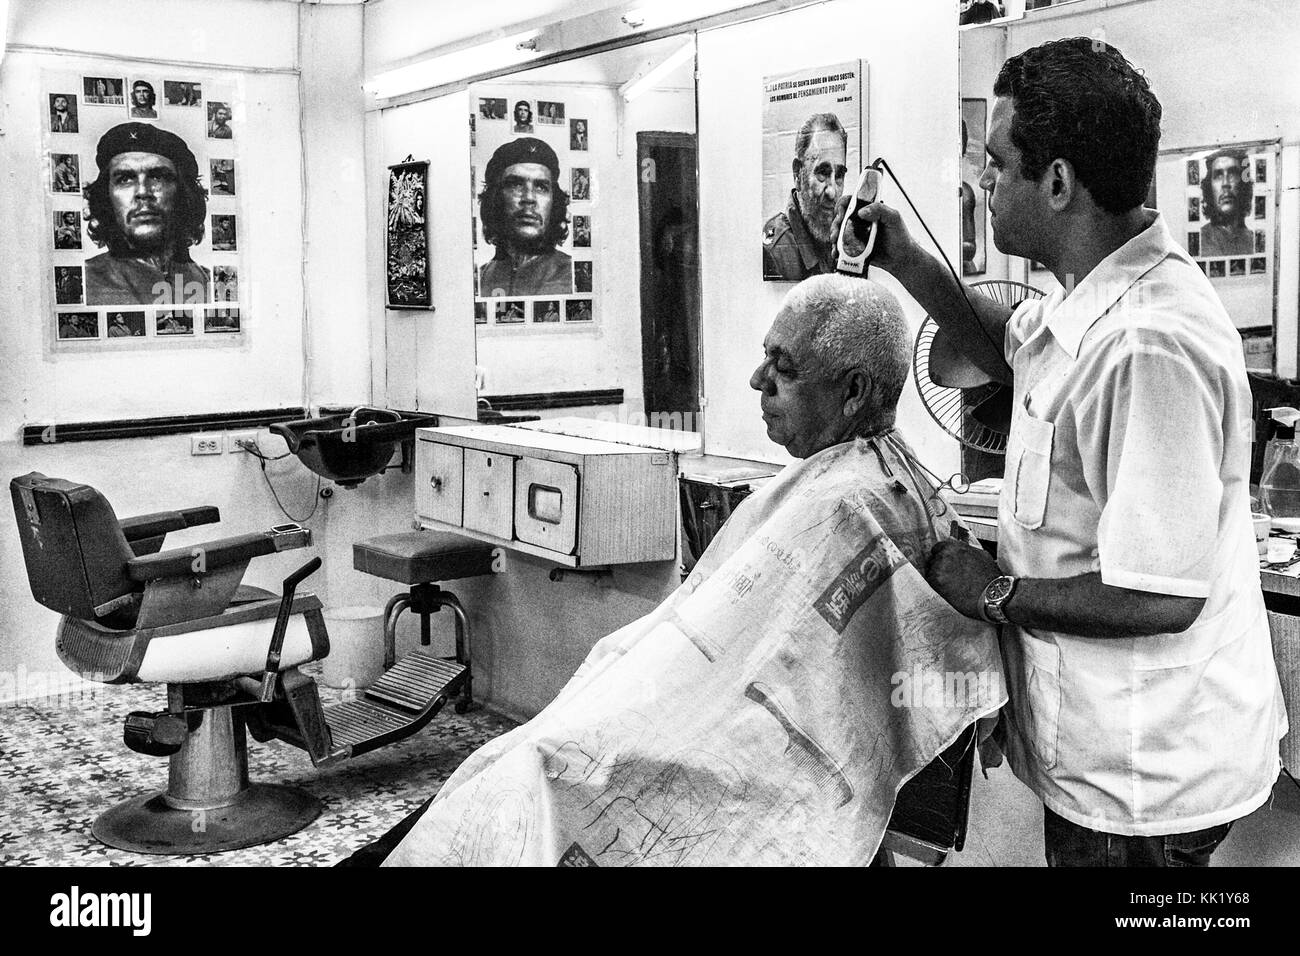 Une coiffure couper les poils à un client avec le rasoir électrique dans un magasin rempli d'affiches révolutionnaires, Vieille Havane, Cuba Banque D'Images